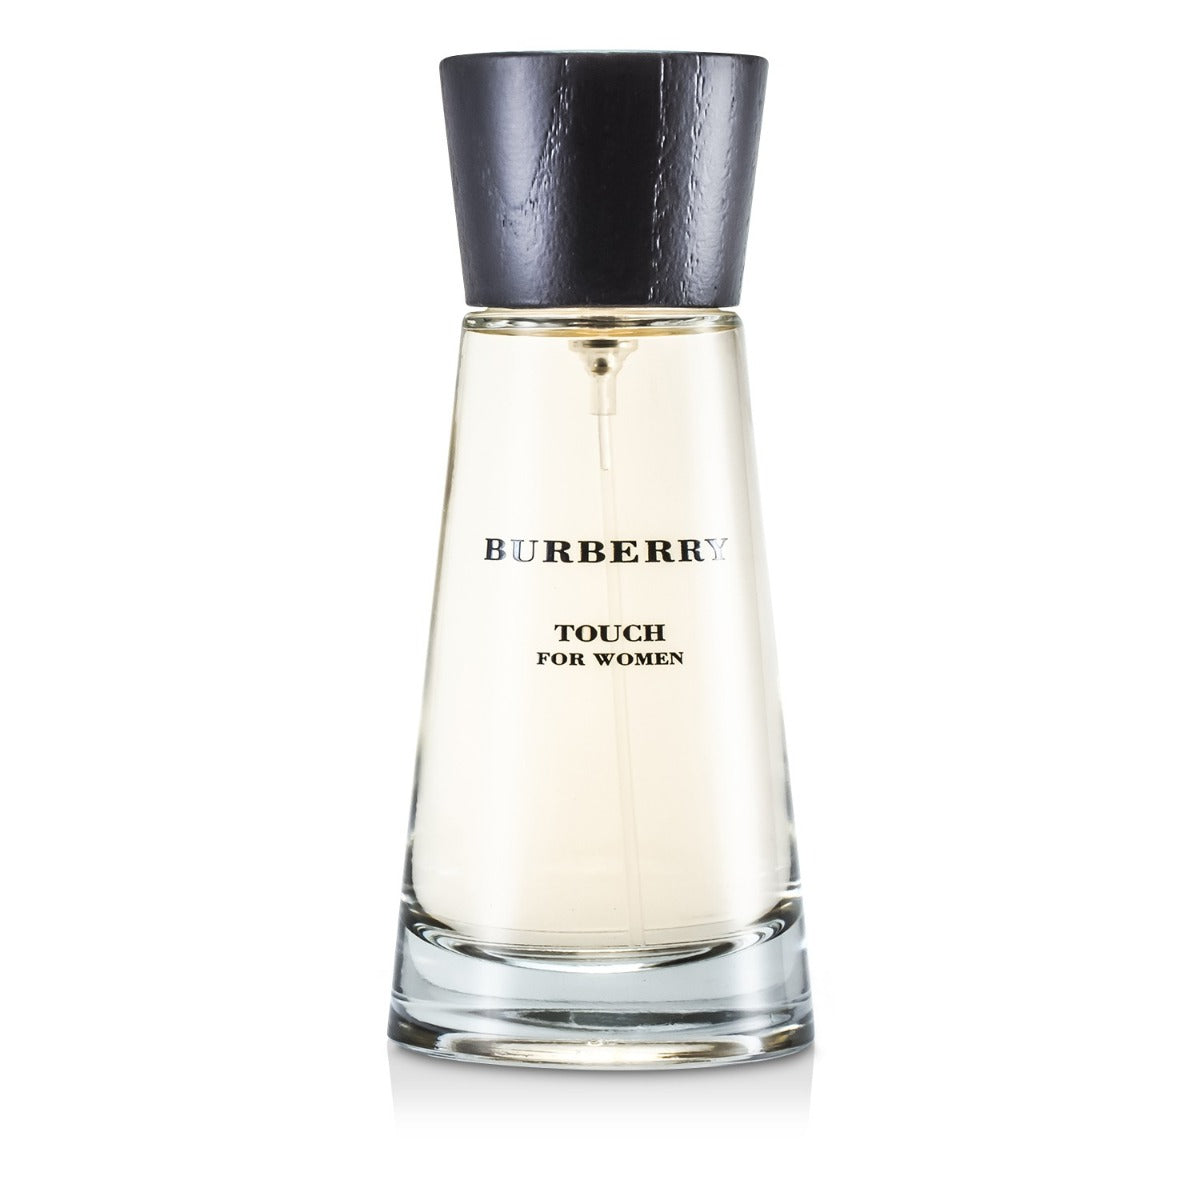 Burberry Touch for Women - Eau de Parfum, 100ml - samawa perfumes 